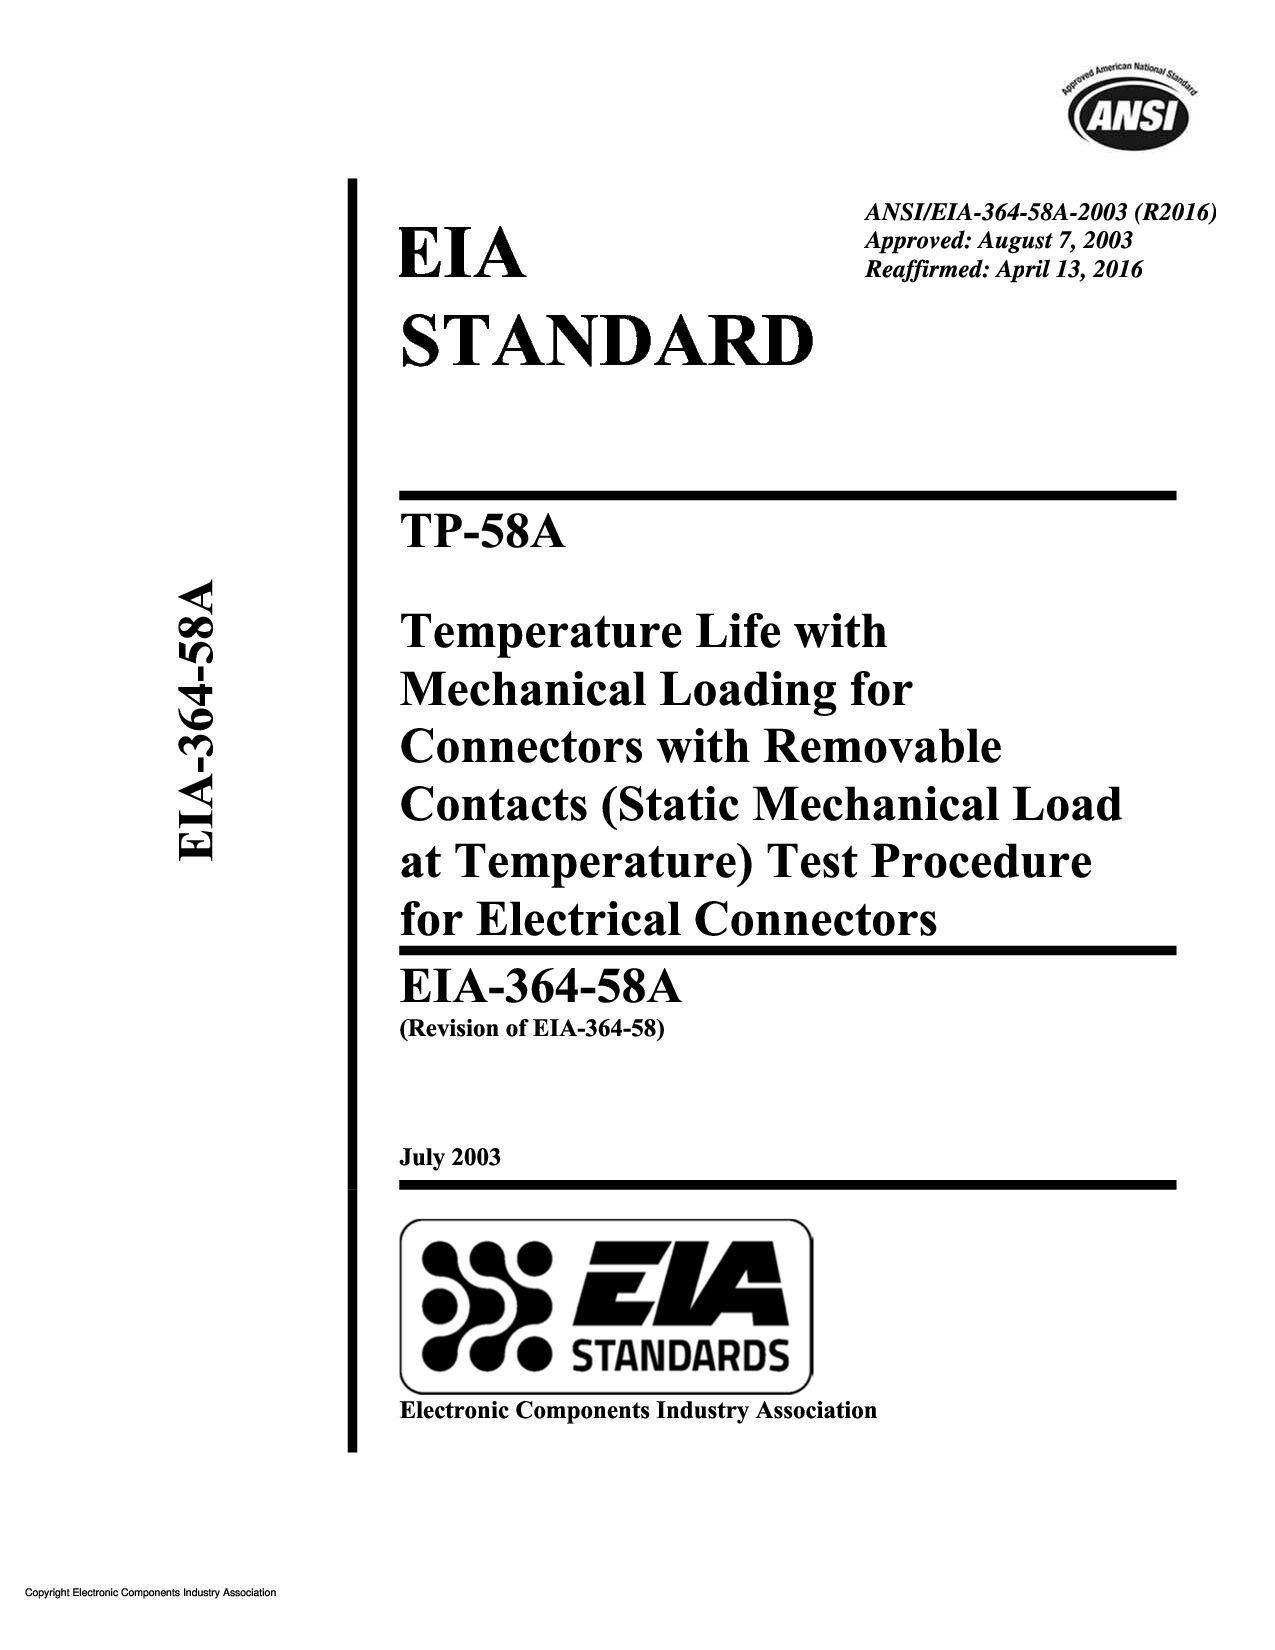 ANSI/EIA 364-58A:2003(2016)